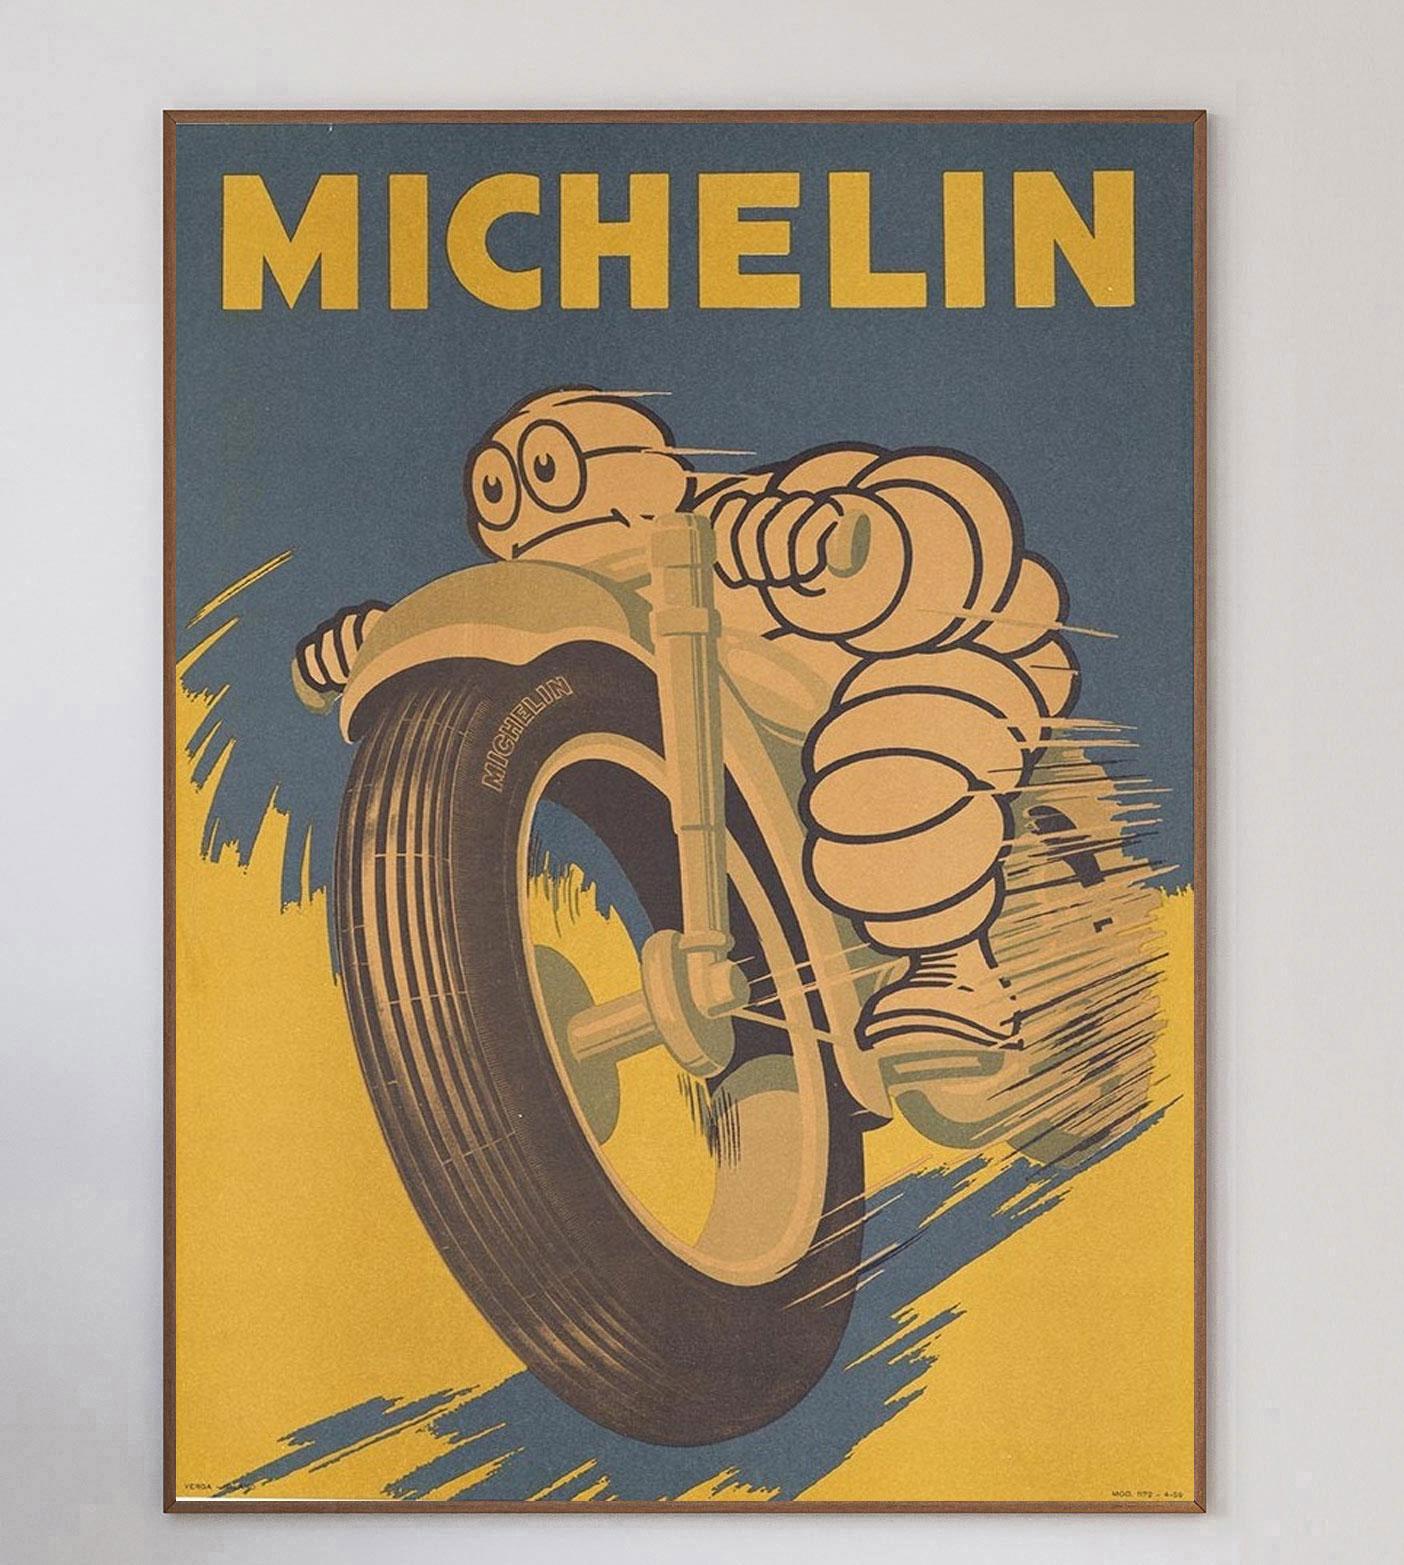 Magnifique affiche imprimée par Verga Printers Milano, cette affiche publicitaire pour les pneus Michelin a été créée en 1959 et représente la mascotte de Michelin, Bibendum, alias Bibendum, sur une moto.

Bibendum a été créé par Marius Rossillon